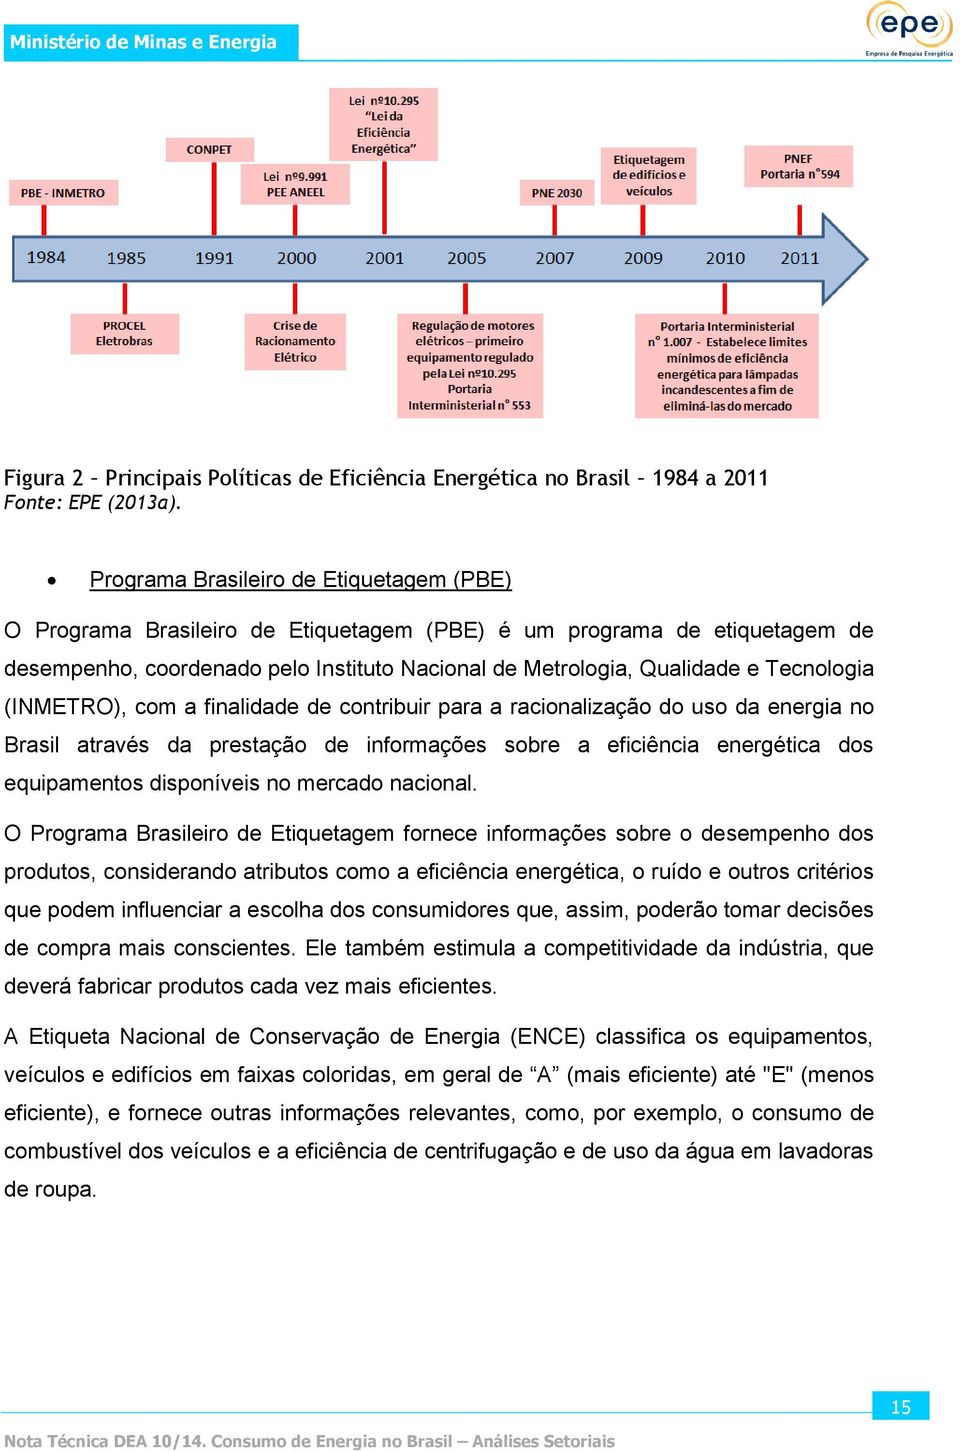 Tecnologia (INMETRO), com a finalidade de contribuir para a racionalização do uso da energia no Brasil através da prestação de informações sobre a eficiência energética dos equipamentos disponíveis